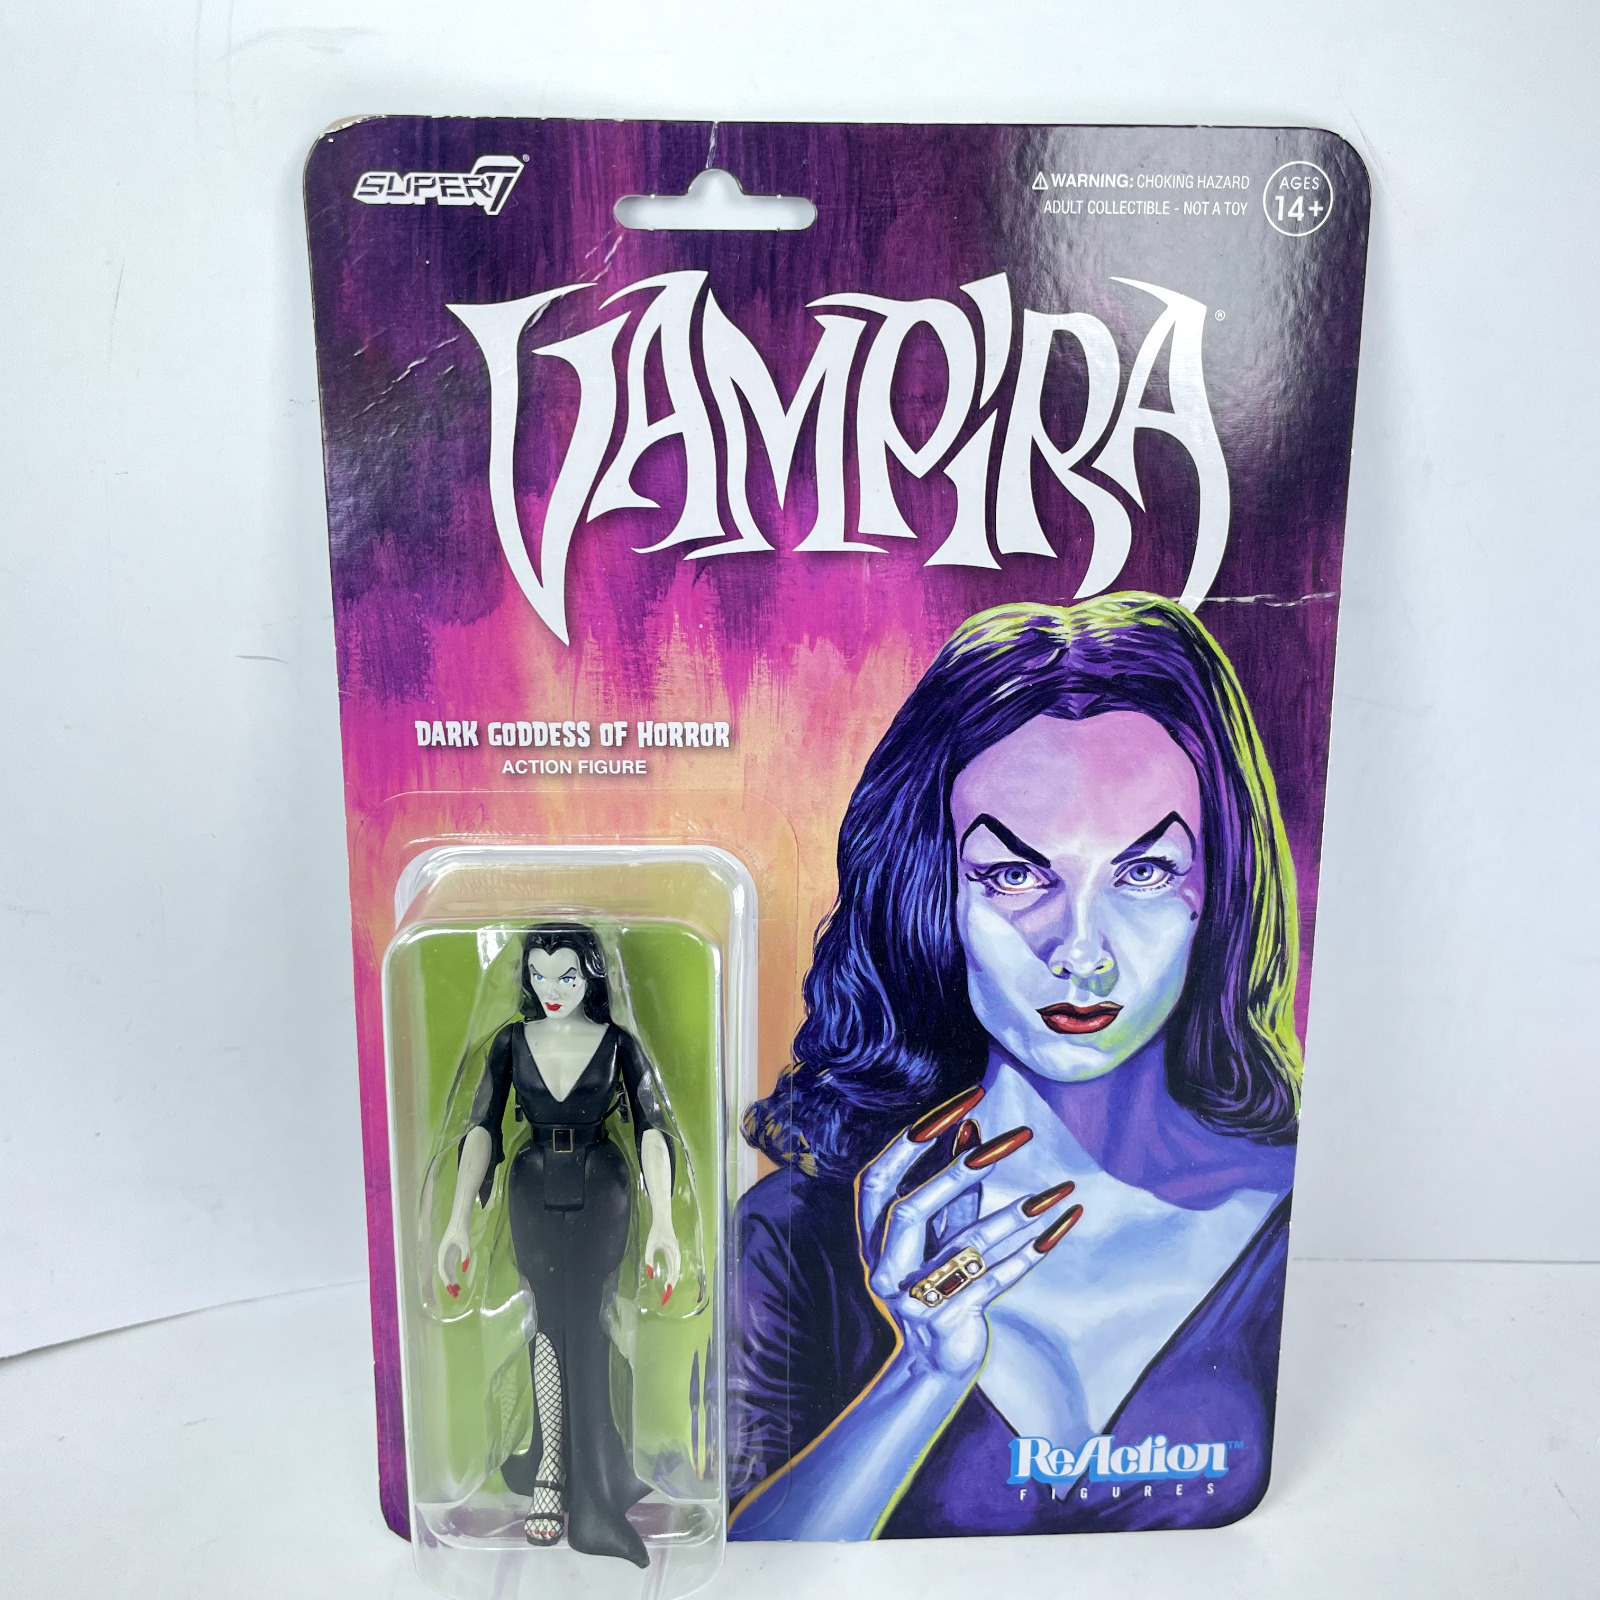 Vampira Dark Goddess Of Horror Super 7 Reaction Action Figure New Sealed